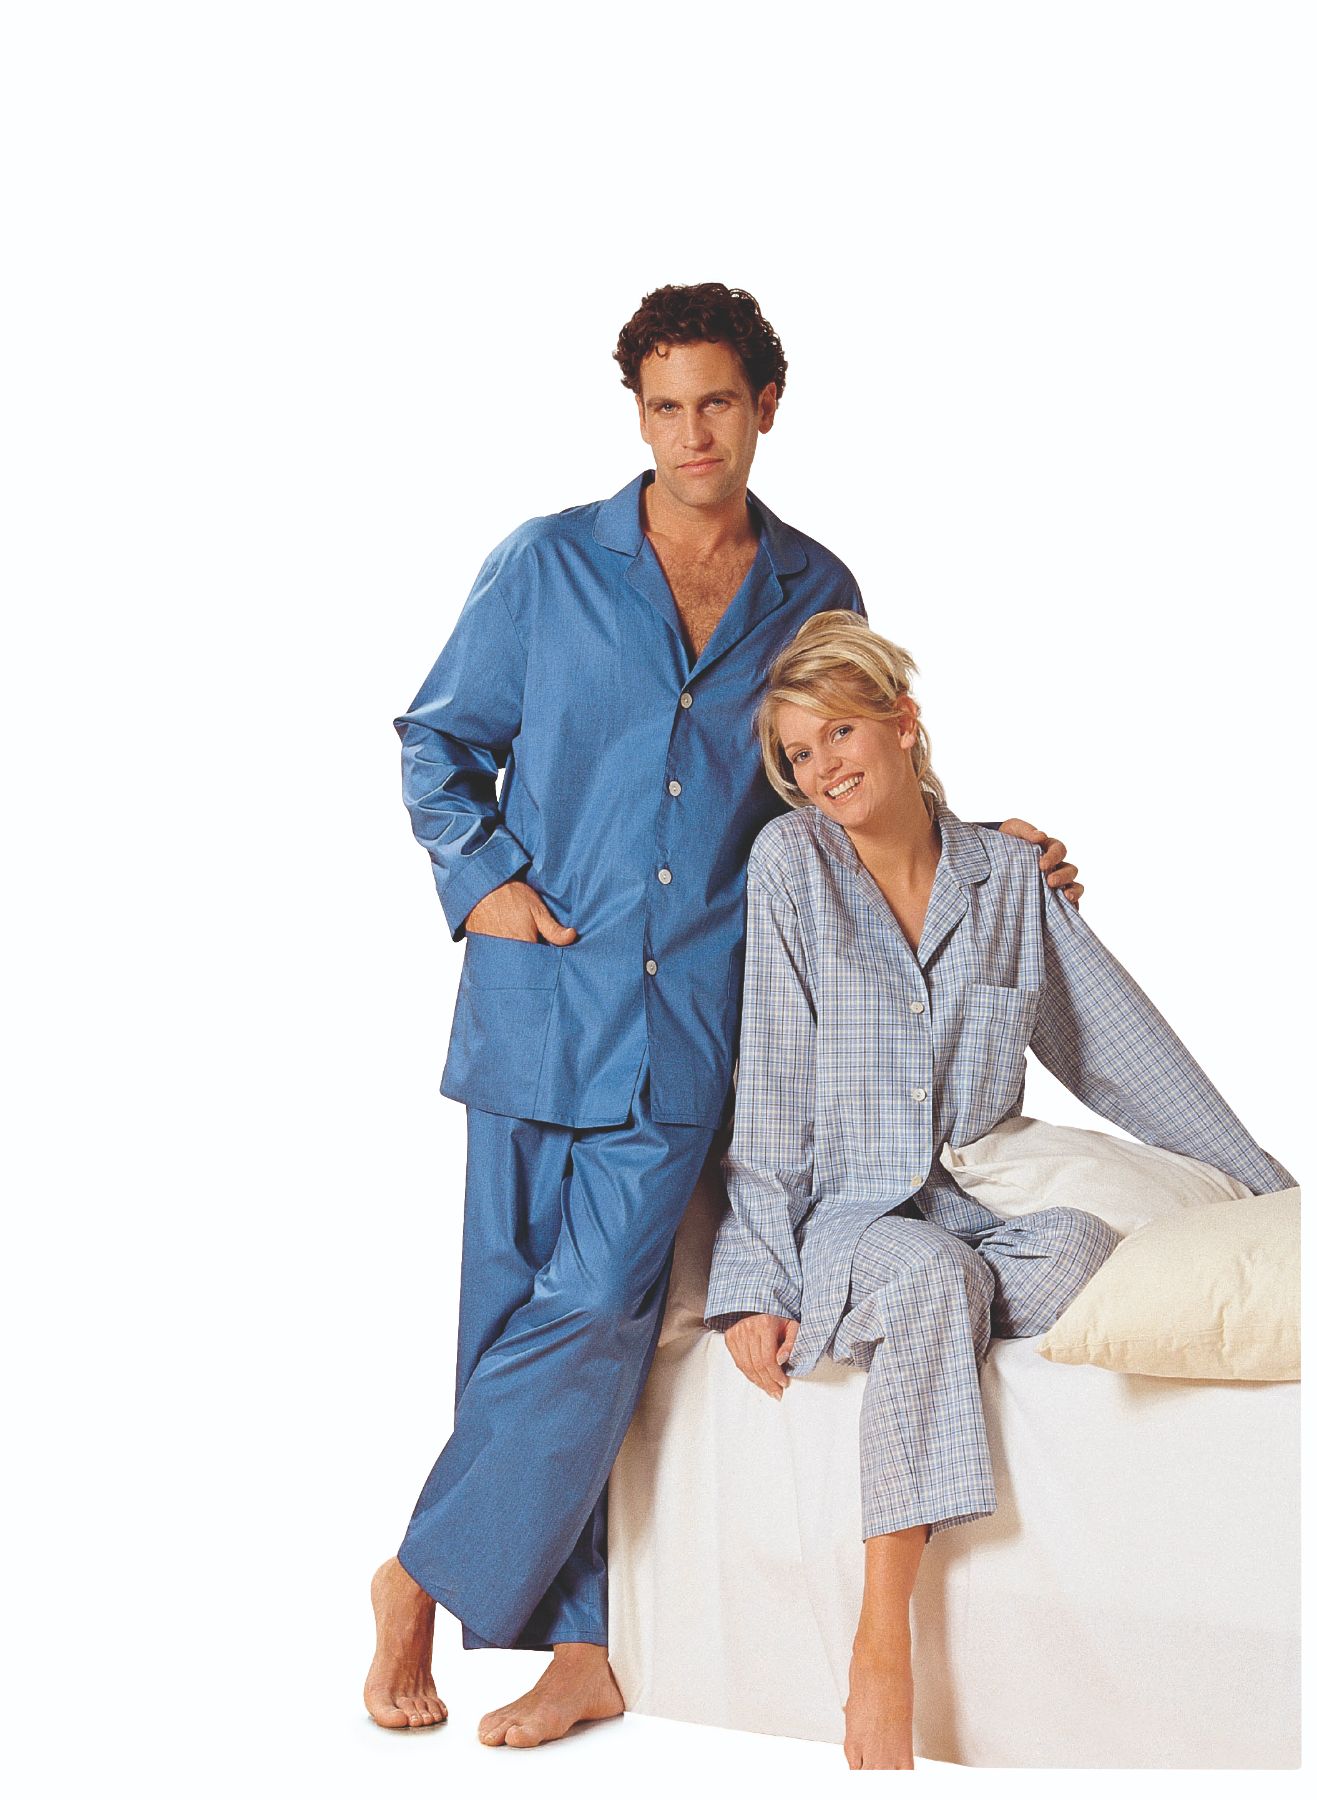 Burda Geel 2691 - Pyjama in variaties